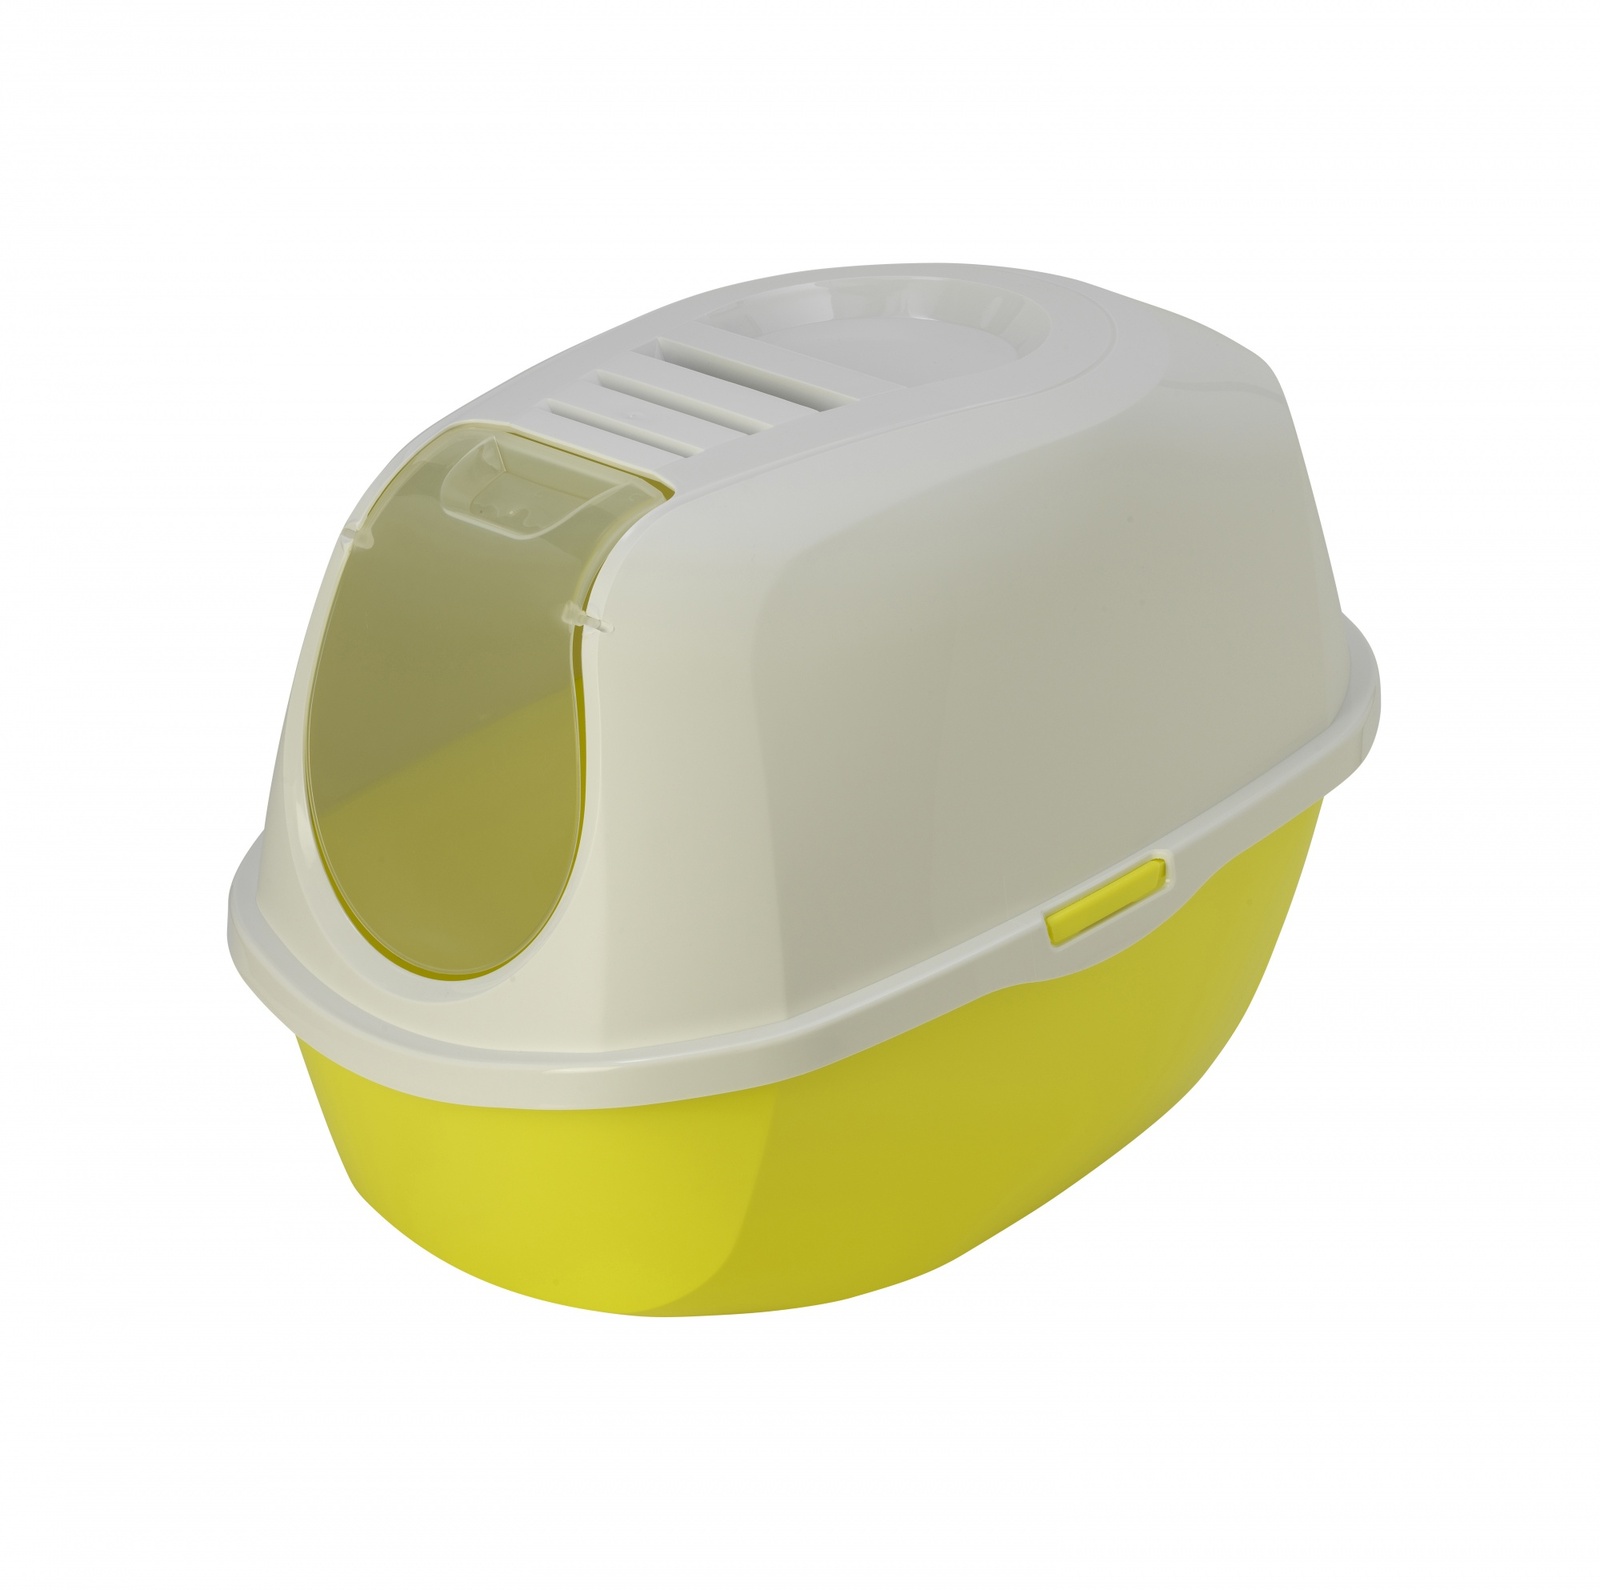 Moderna Moderna туалет-домик SmartCat с угольным фильтром, 54х40х41см, лимонно-желтый (1,2 кг) moderna moderna автопоилка smart 3л лимонно желтый 3 л